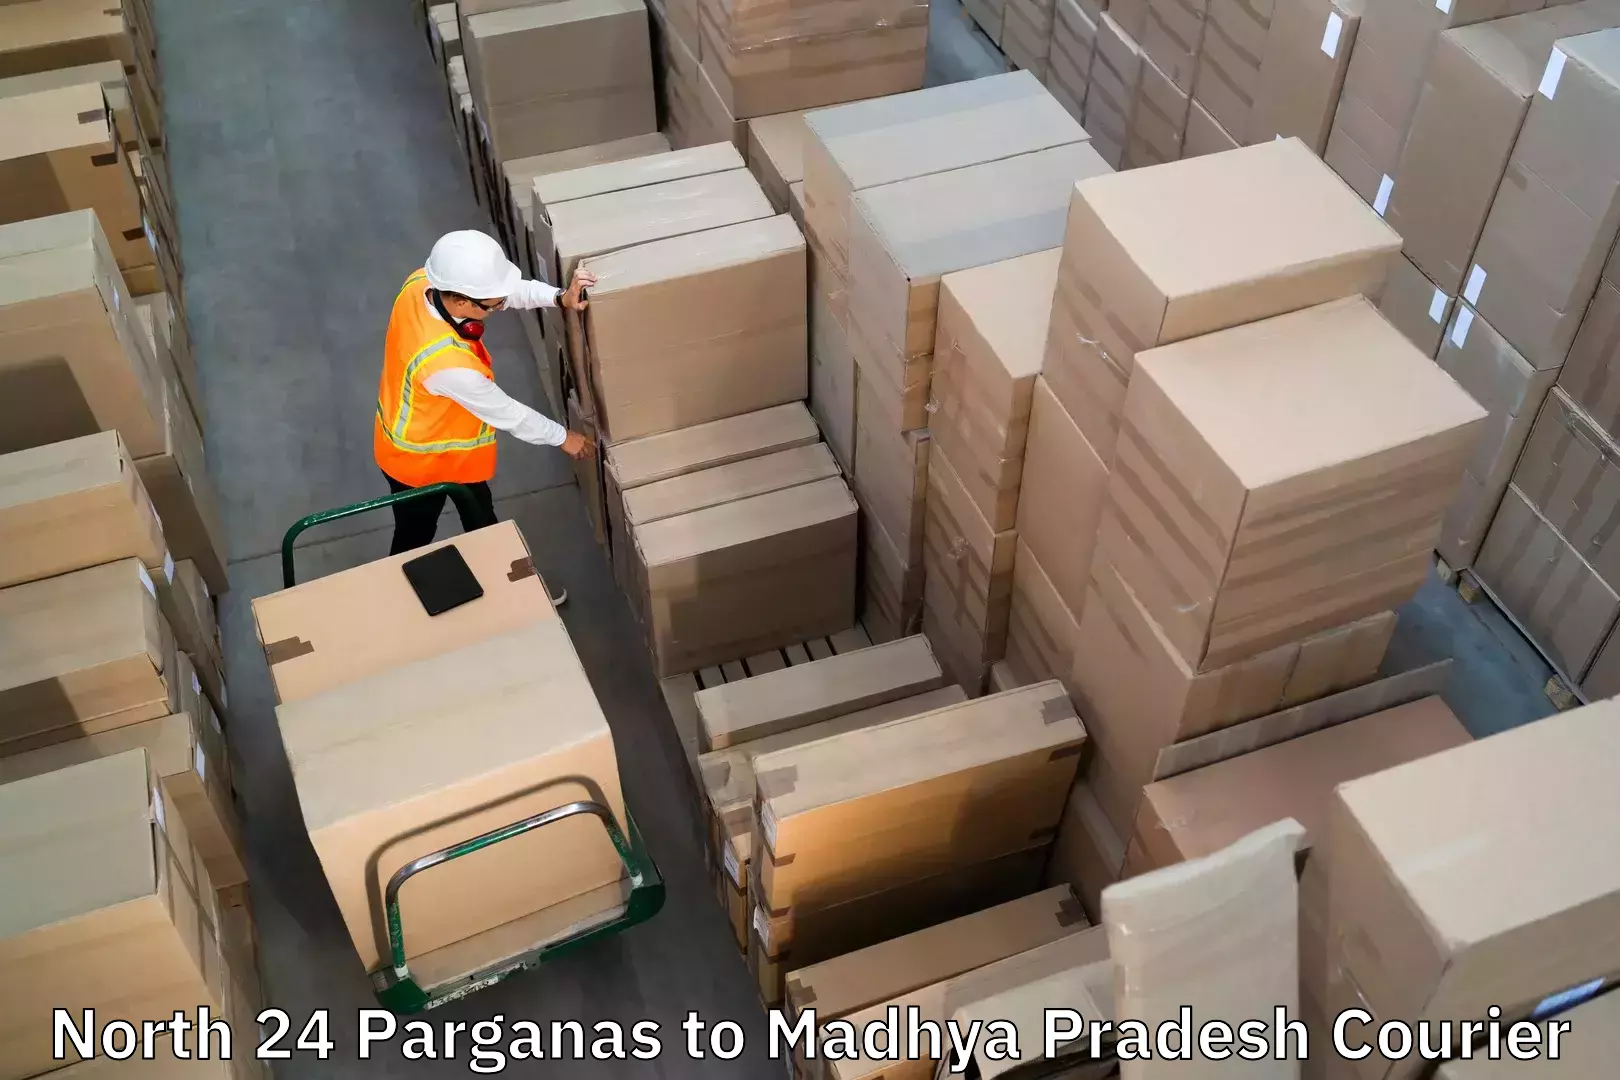 Baggage shipping experts North 24 Parganas to Jhabua